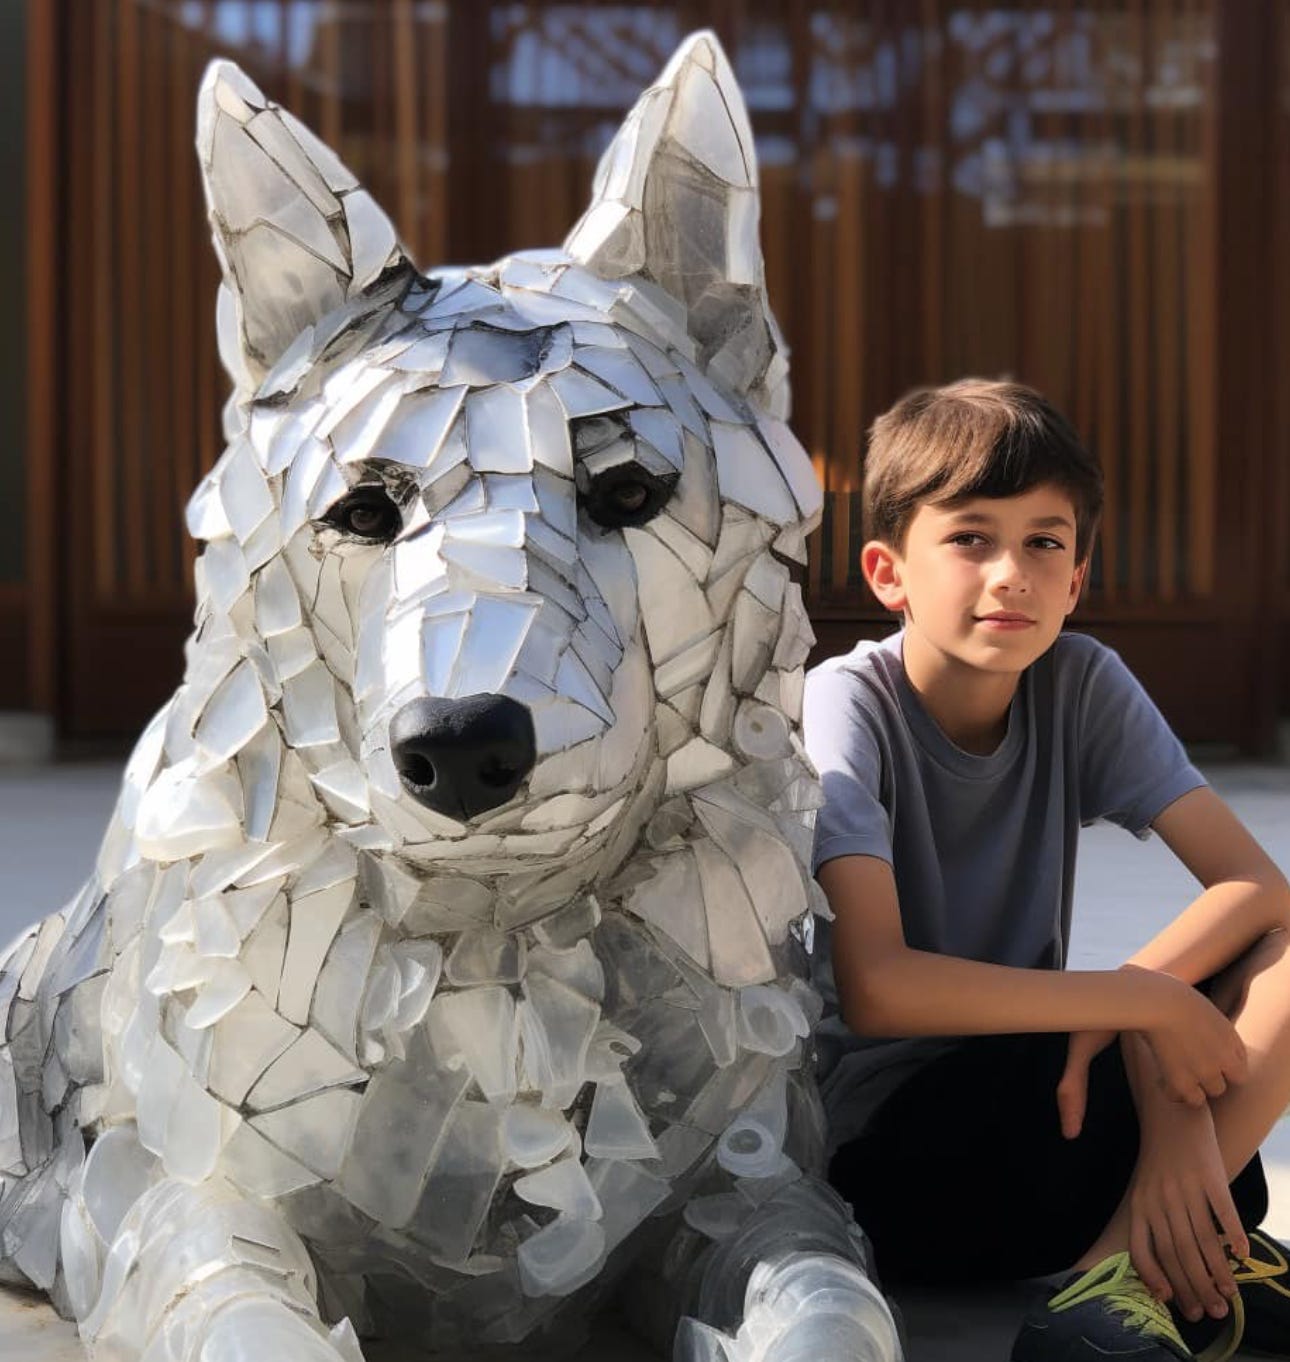 Kid next to a sculpture